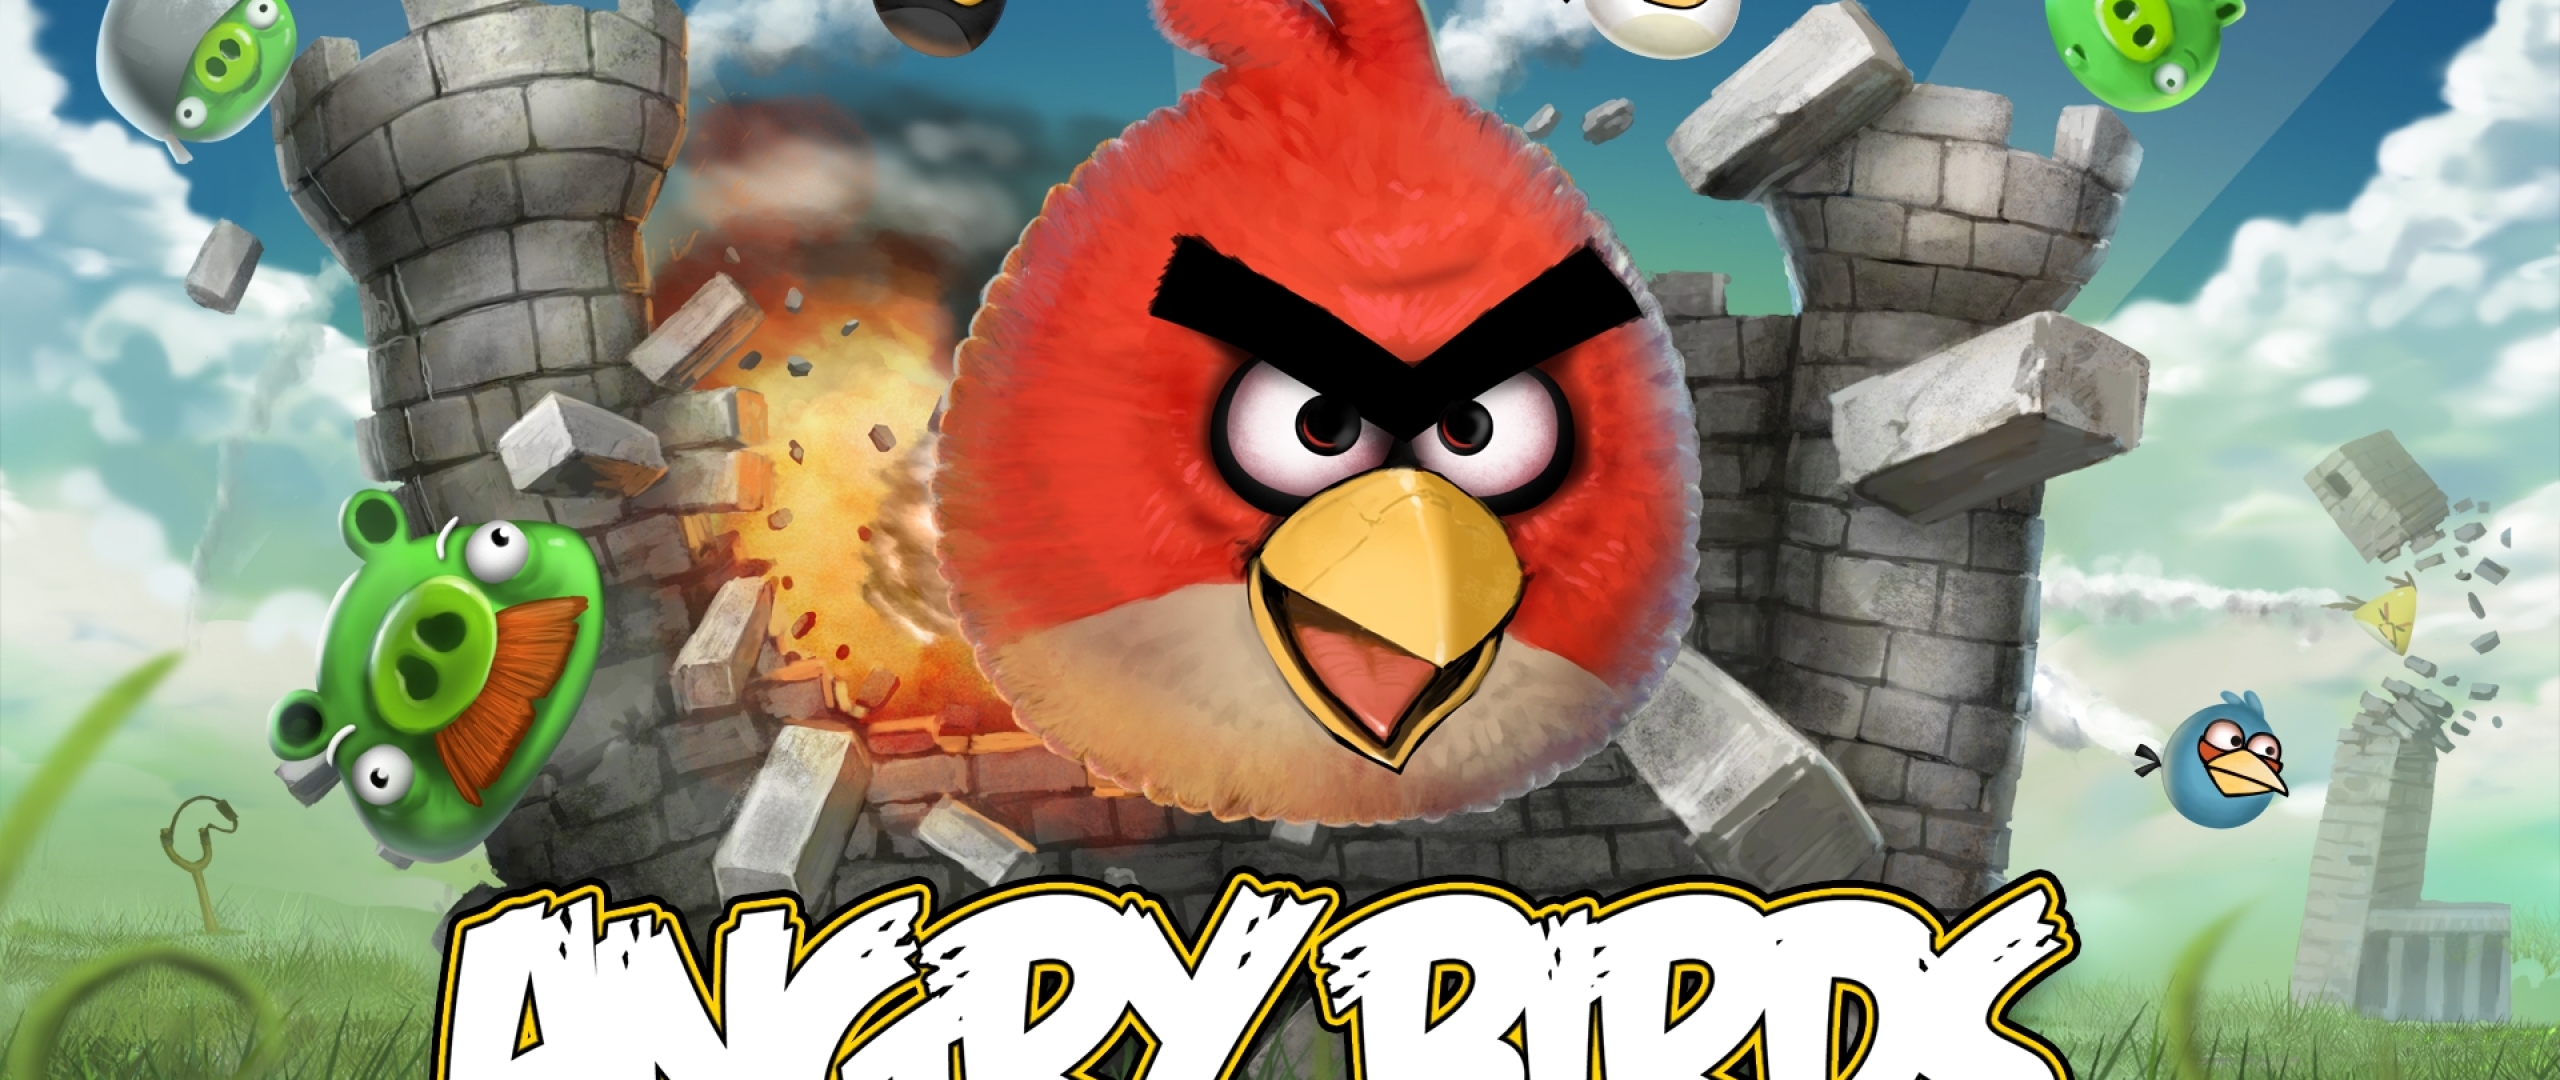 Игра енгрибердс. Игра Angry Birds Classic. Энгри бердз игра первая версия. Angry Birds китайская версия. Игра Энгри бердз 2 злые птицы.